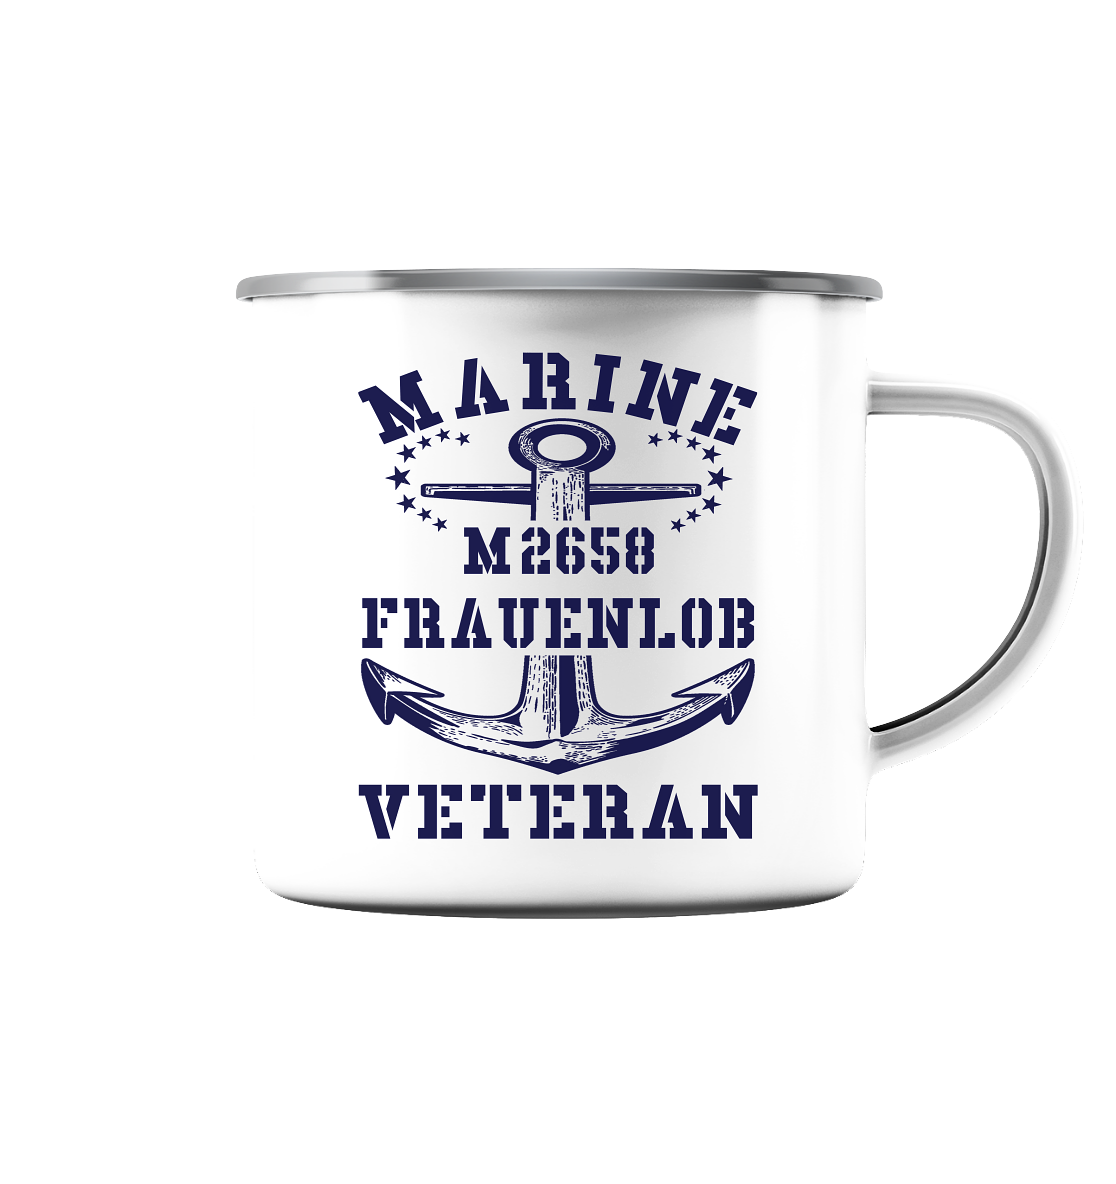 BiMi M2658 FRAUENLOB Marine Veteran - Emaille Tasse (Silber)